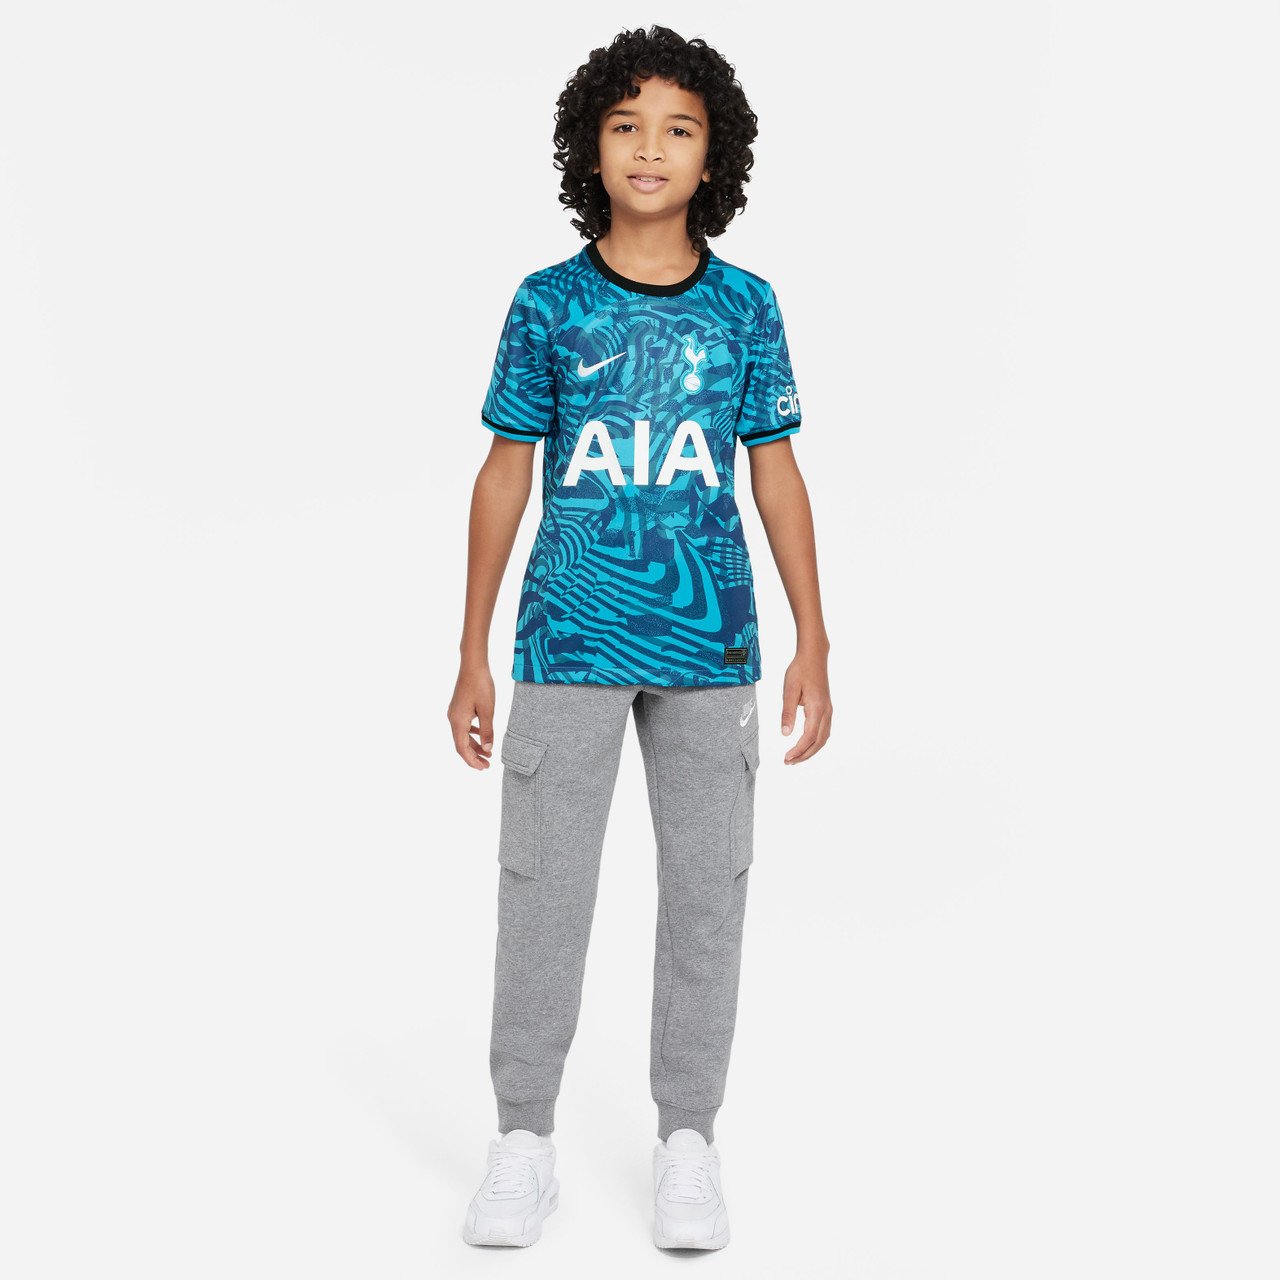 New Tottenham shirt GALAXY : r/Tottenham